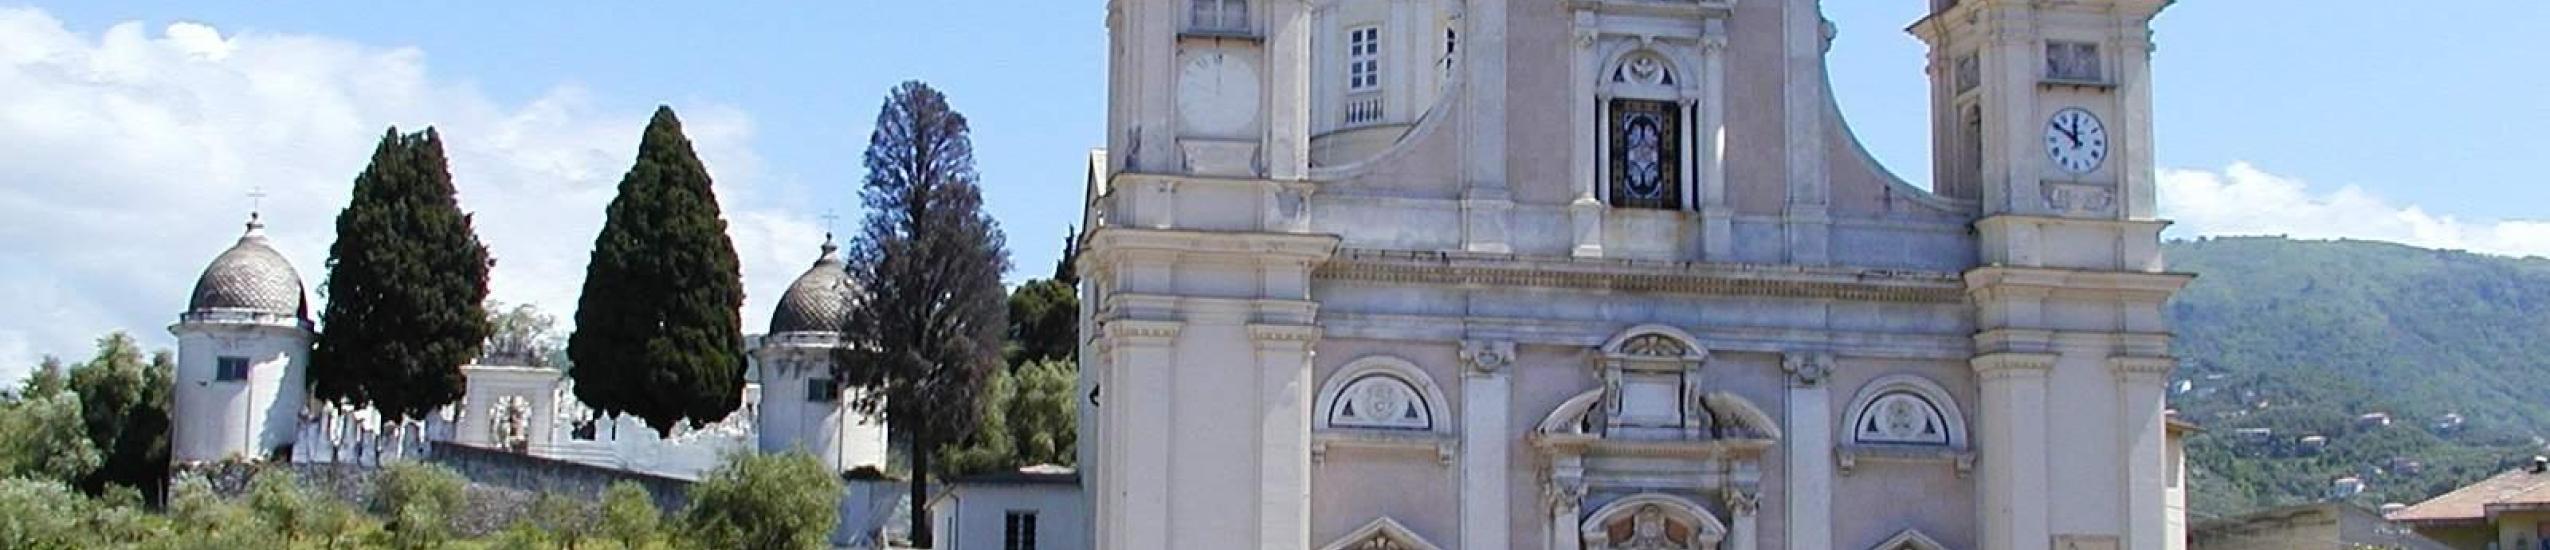 basilica di santo stefano